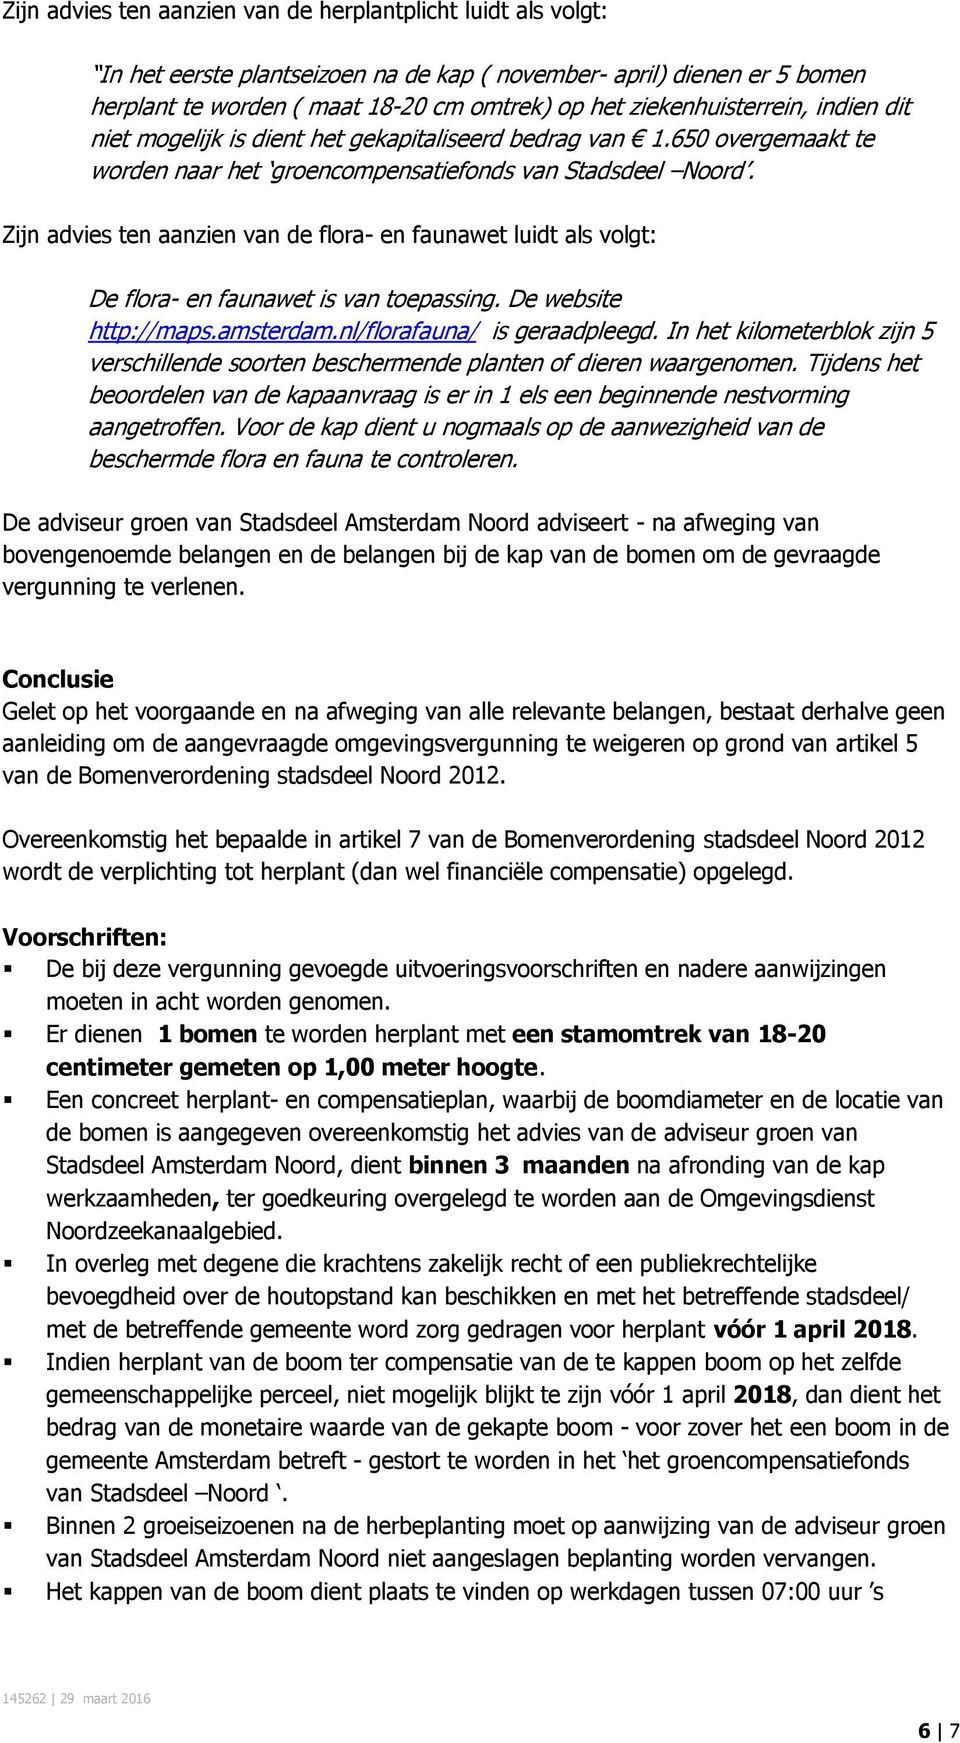 Zijn advies ten aanzien van de flora- en faunawet luidt als volgt: De flora- en faunawet is van toepassing. De website http://maps.amsterdam.nl/florafauna/ is geraadpleegd.